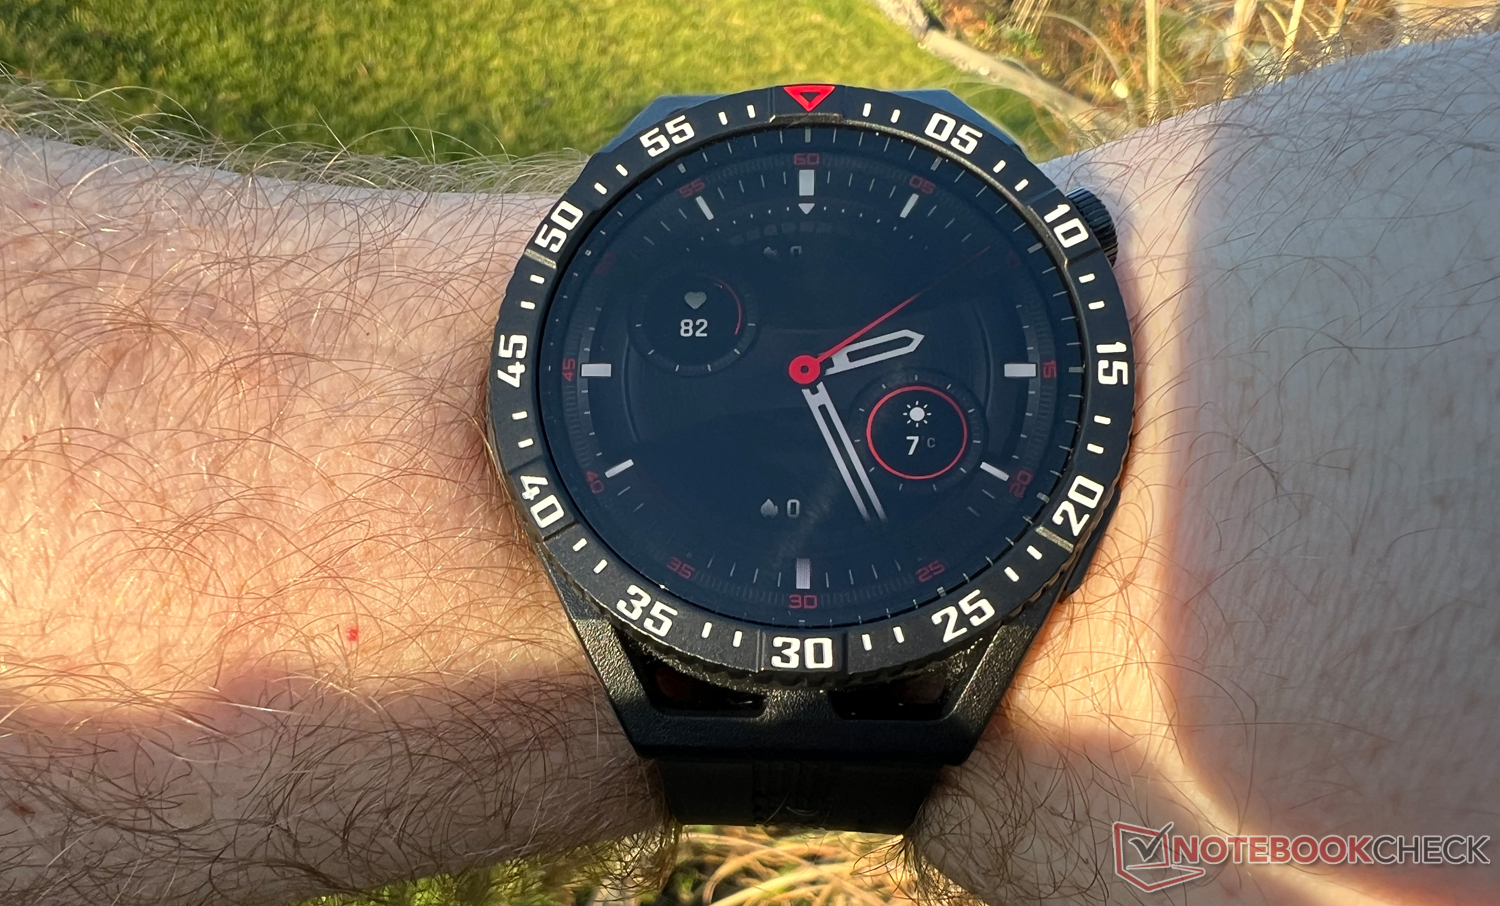 Huawei Watch GT 3 Pro, análisis y opinión